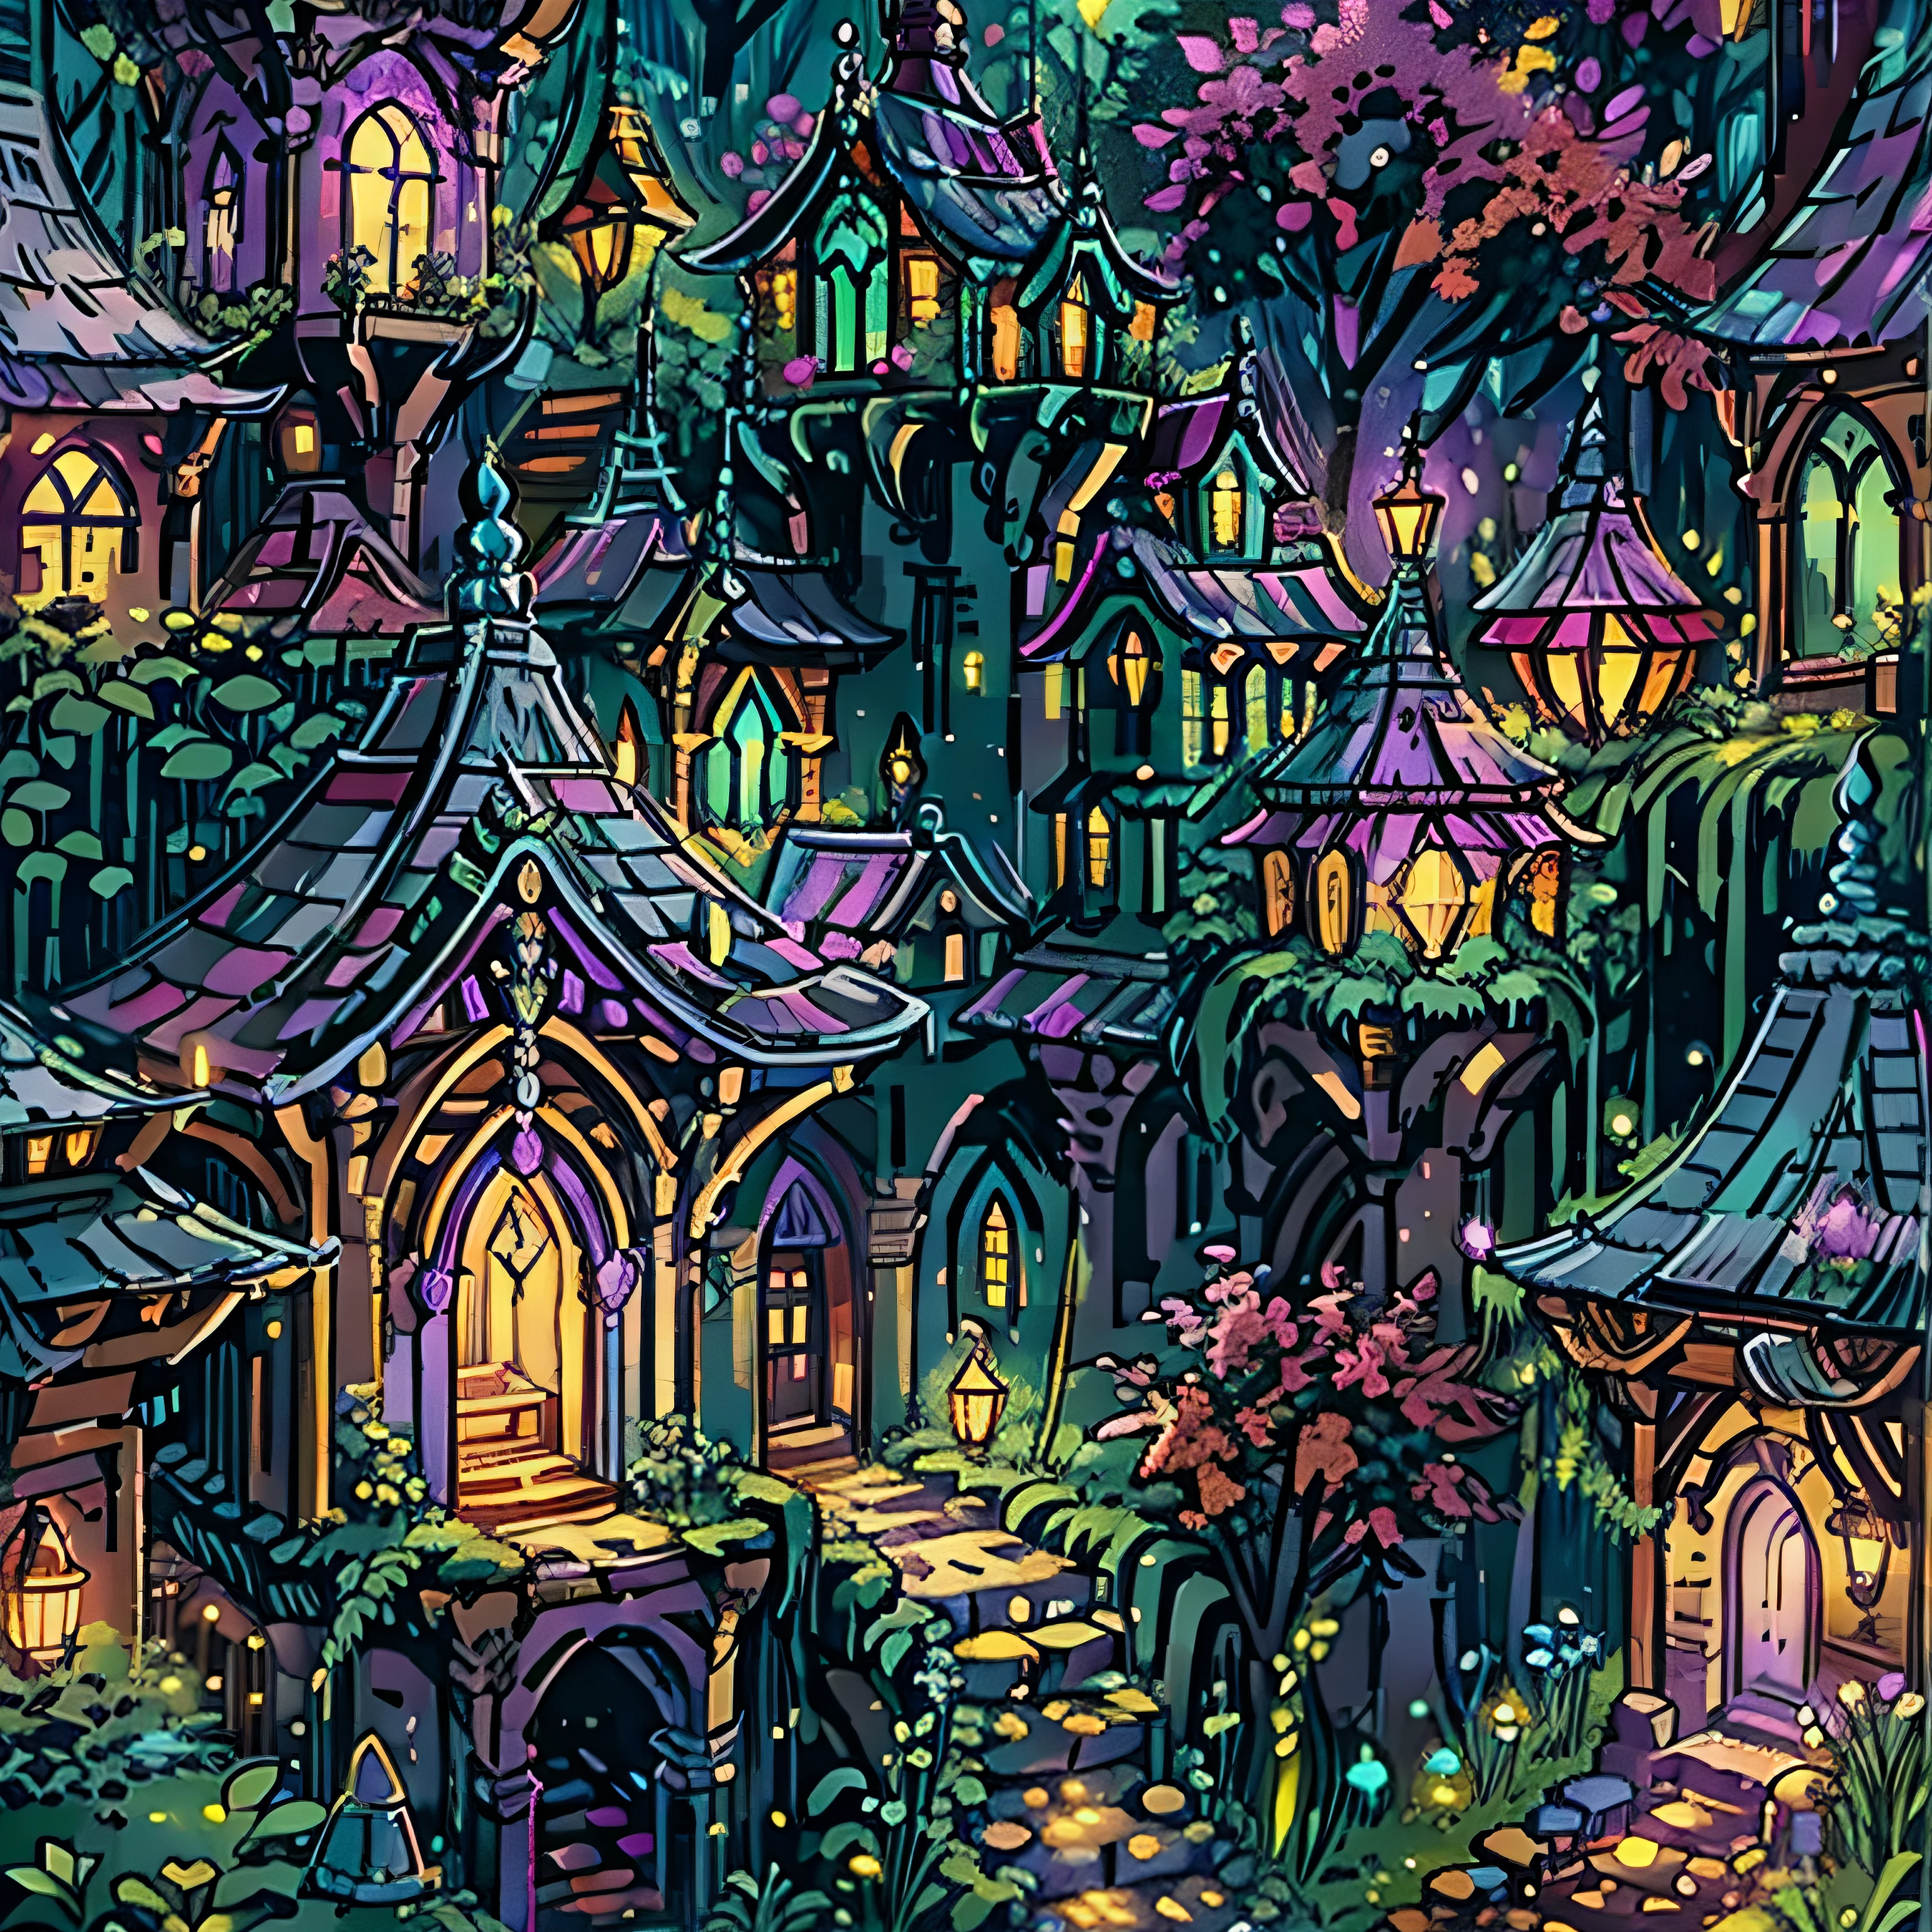 坐落在魔法森林中的精灵城市中，精心设计的住宅细节, 被柔和的燈光照亮, 散发着迷人魅力的紫色光芒. 一个宁静祥和的地方, 给人一种宁静的感觉."